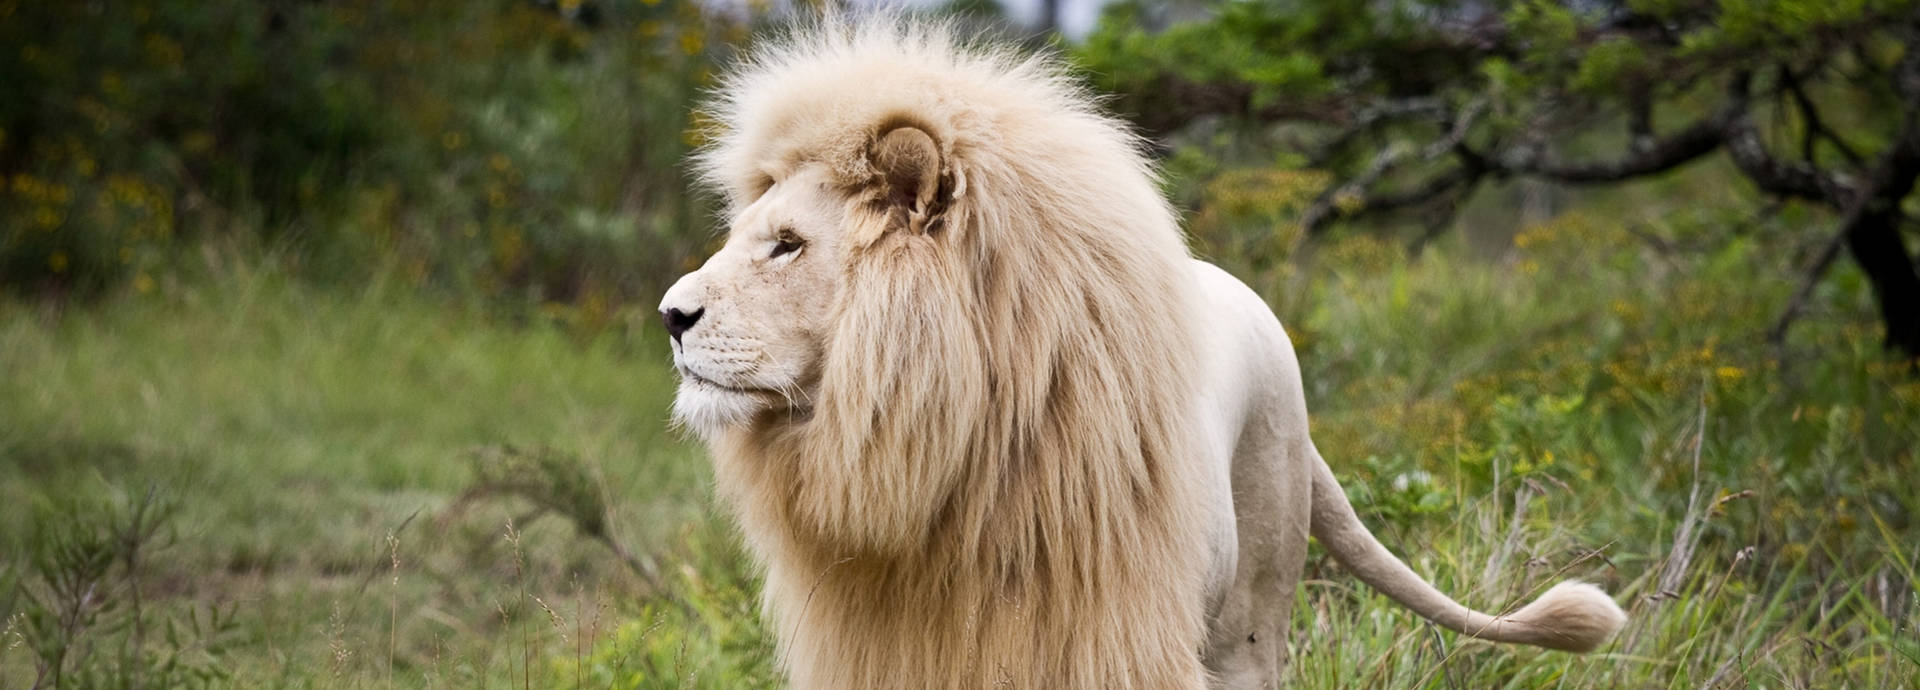 Magnificent White Lion